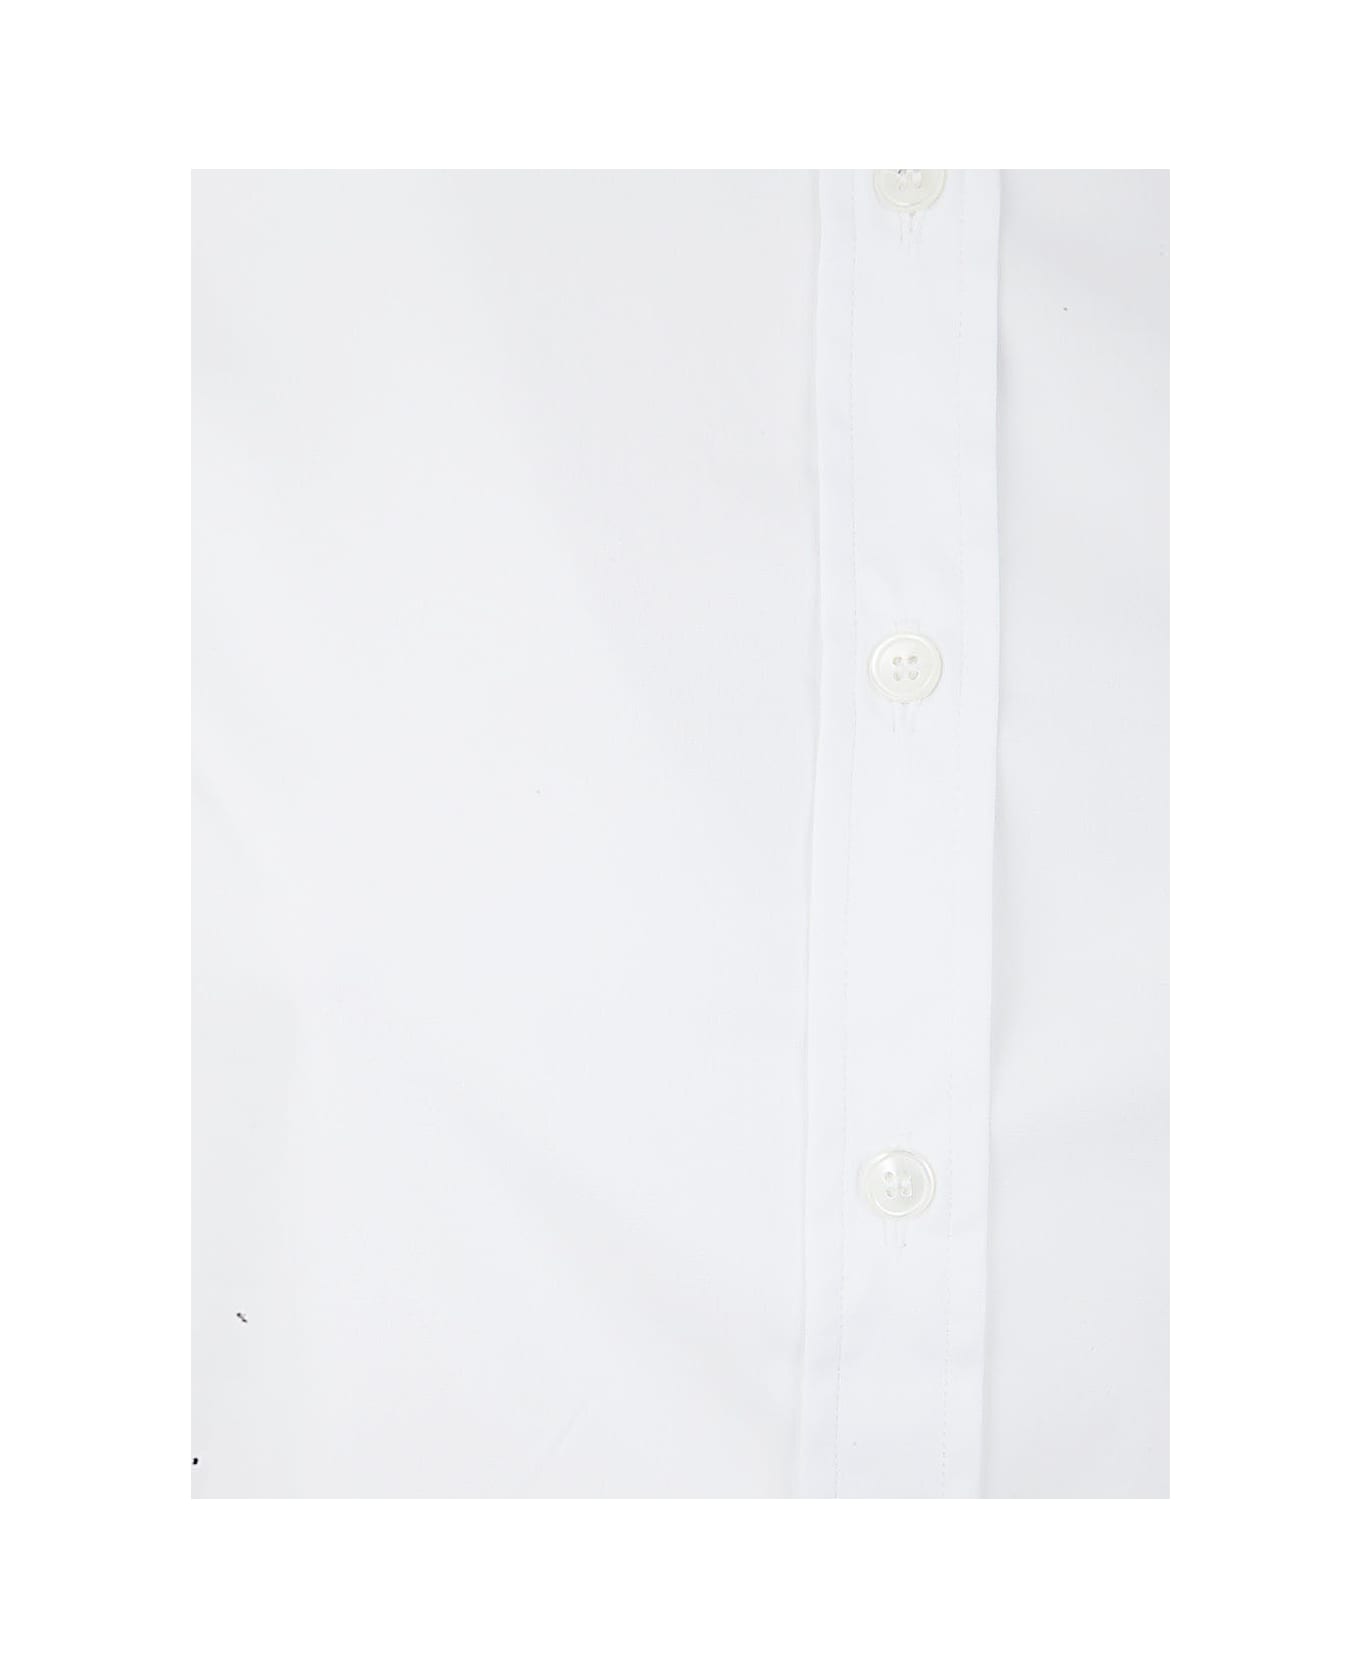 DNL Shirt - White